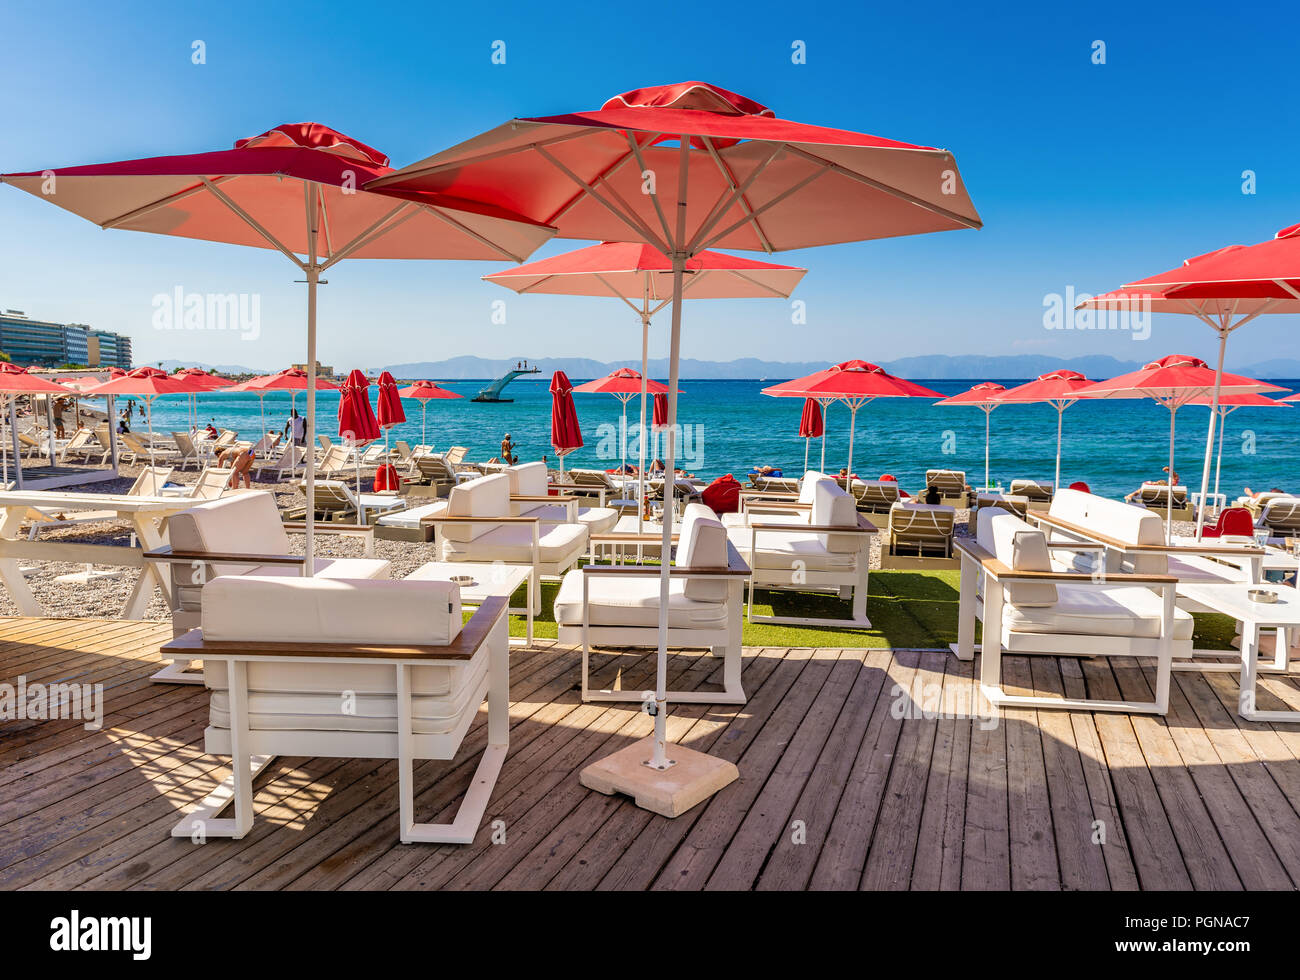 RHODES, GRÈCE - 13 mai 2018 : Des chaises longues avec parasols sur la plage de Ellie dans la ville de Rhodes. Grèce Banque D'Images